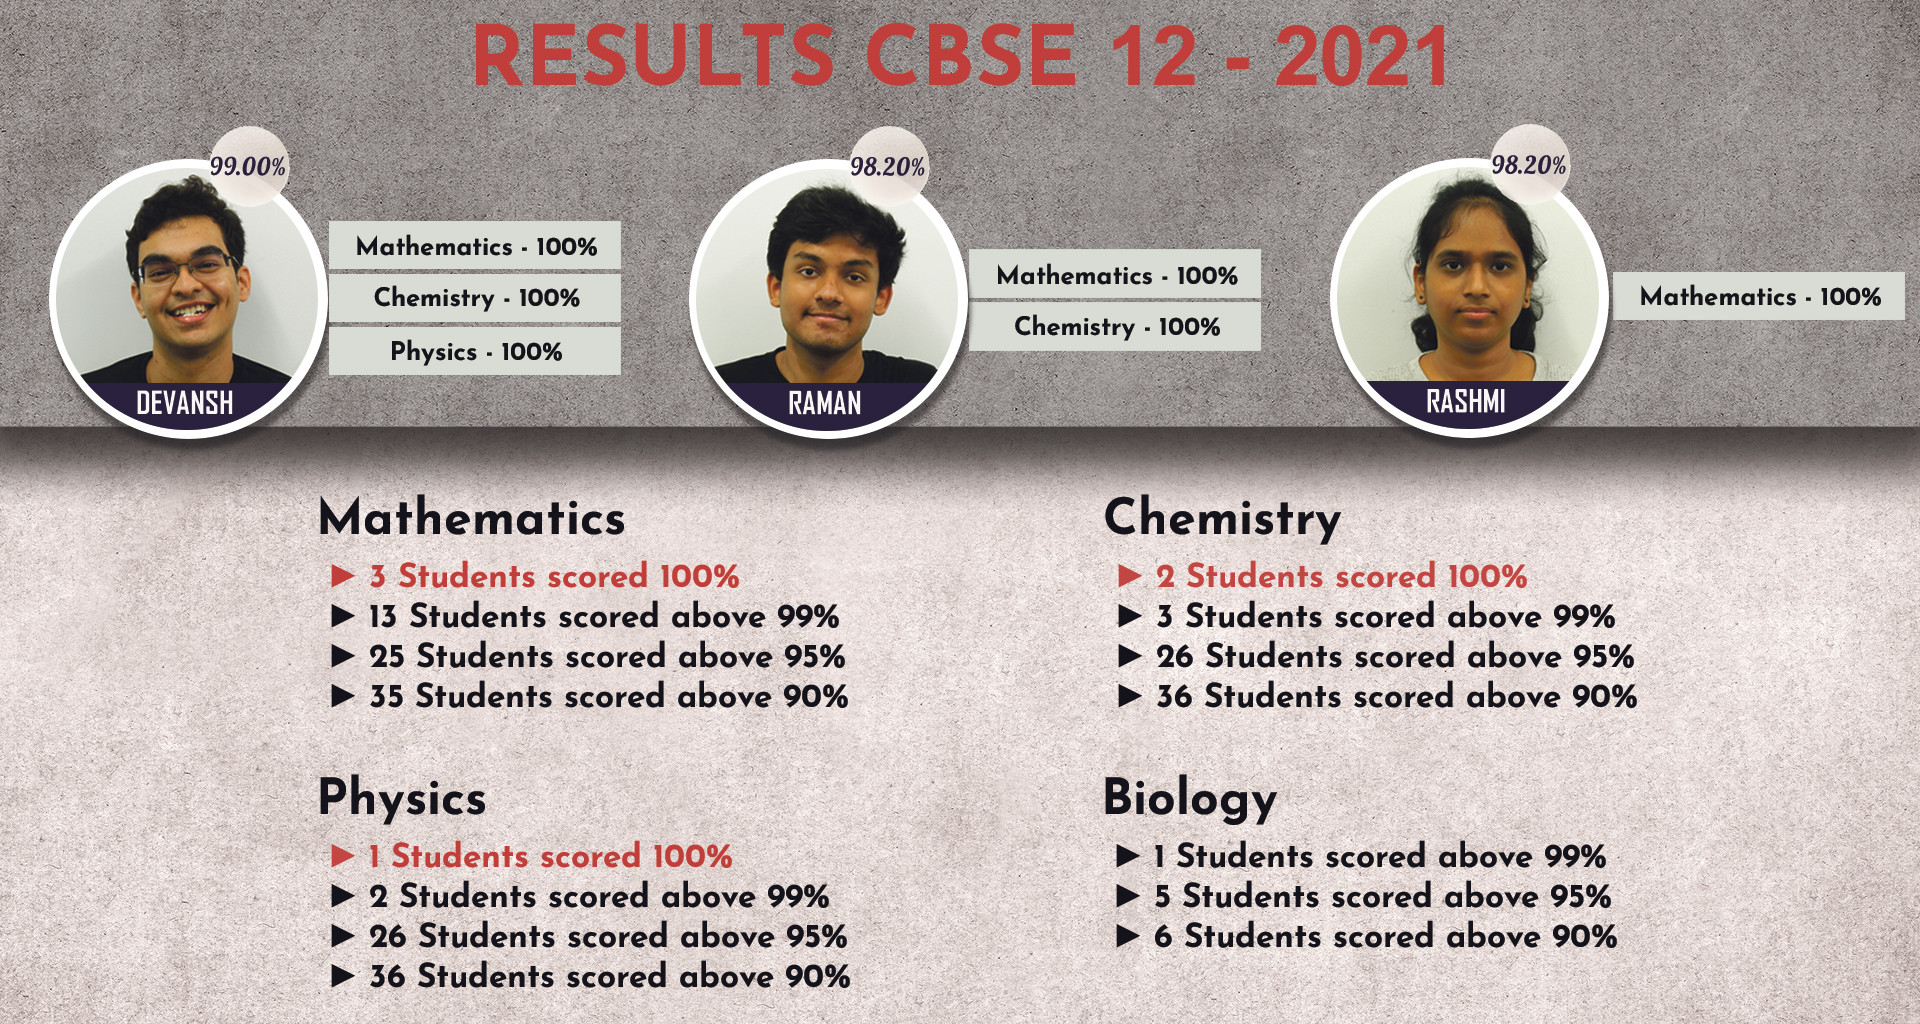 CBSE 12 Result Summary - 2021